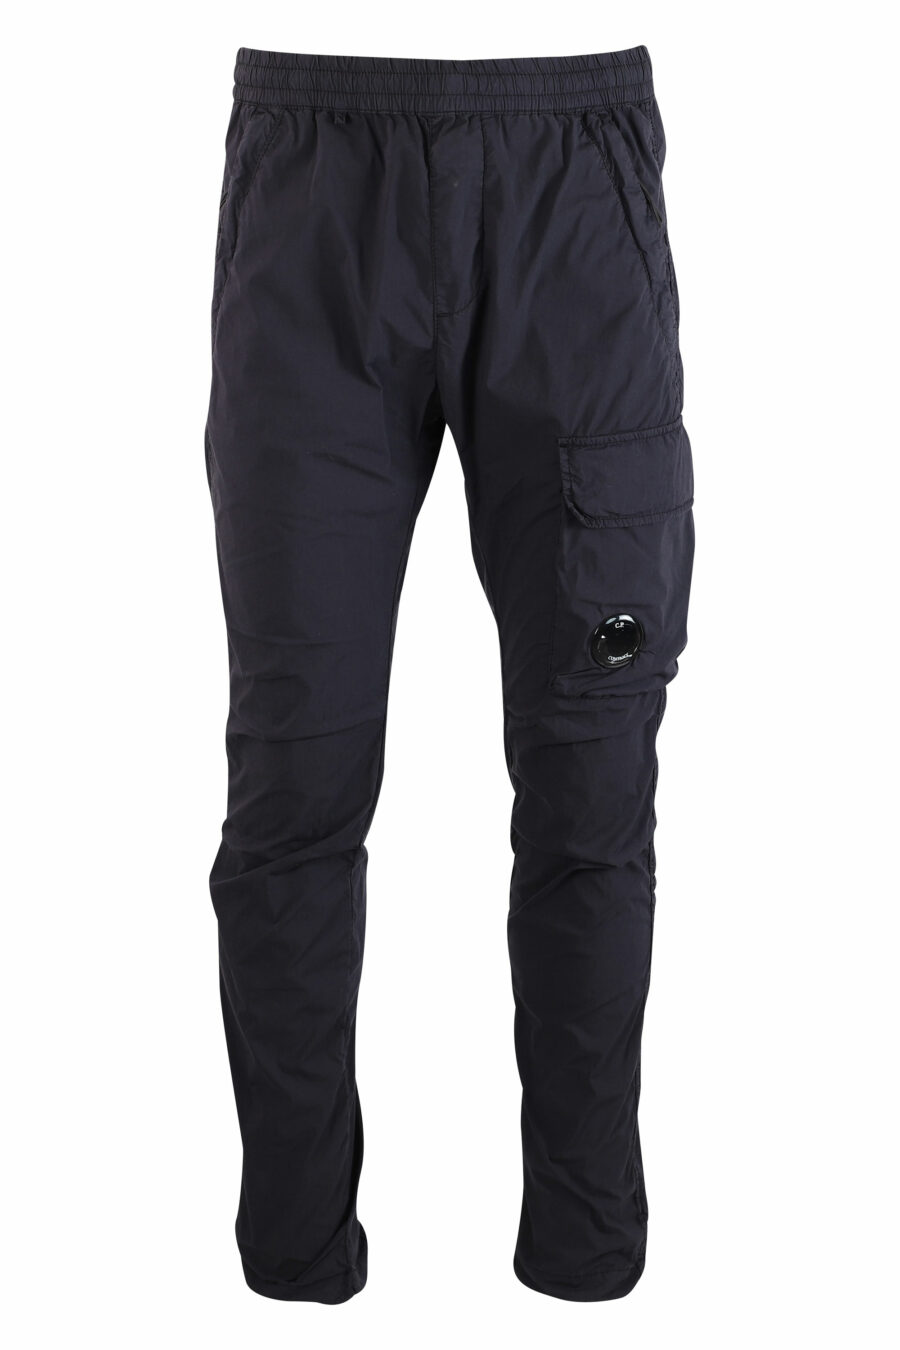 Pantalón azul oscuro con minilogo circular lateral - IMG 9989